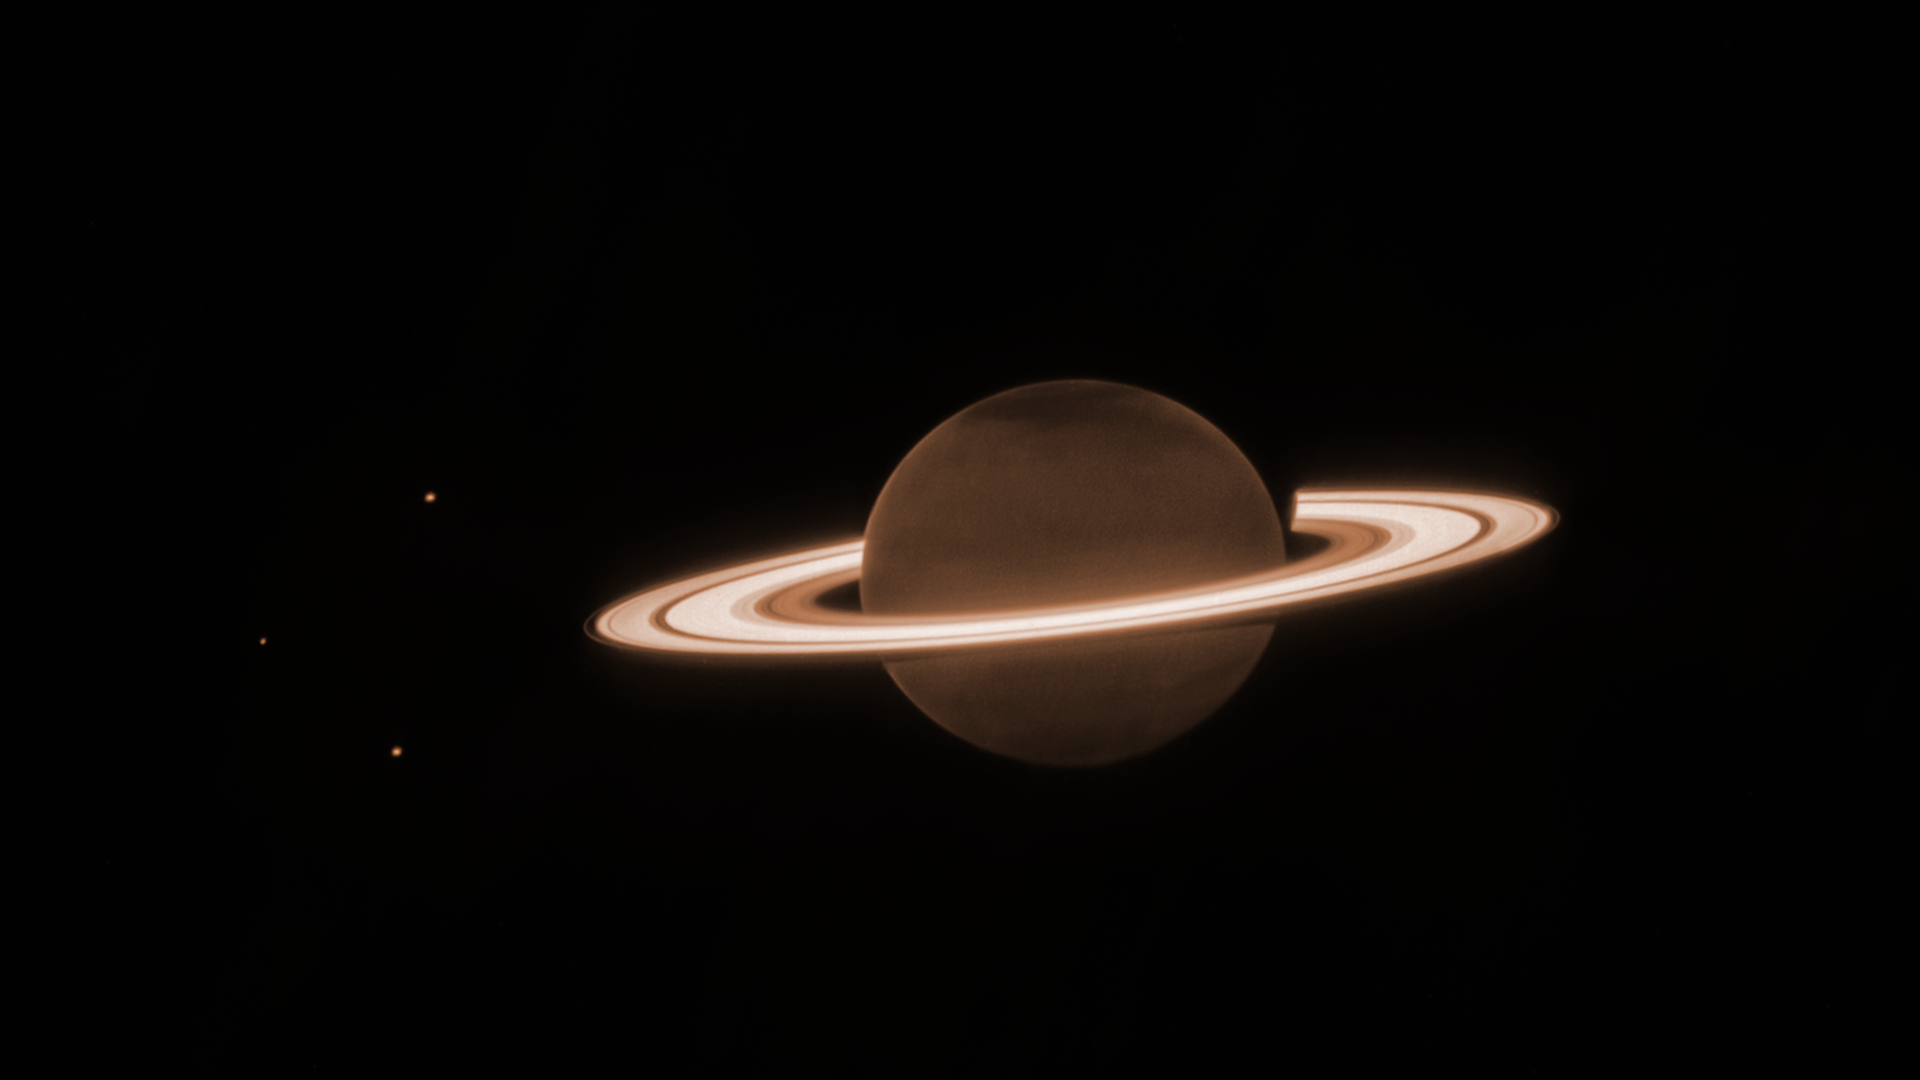 Saturn – links sind drei Monde zu erkennen – erscheint im Infrarotlicht ganz ungewohnt: Die Planetenkugel ist dunkel, der Ring strahlend hell.